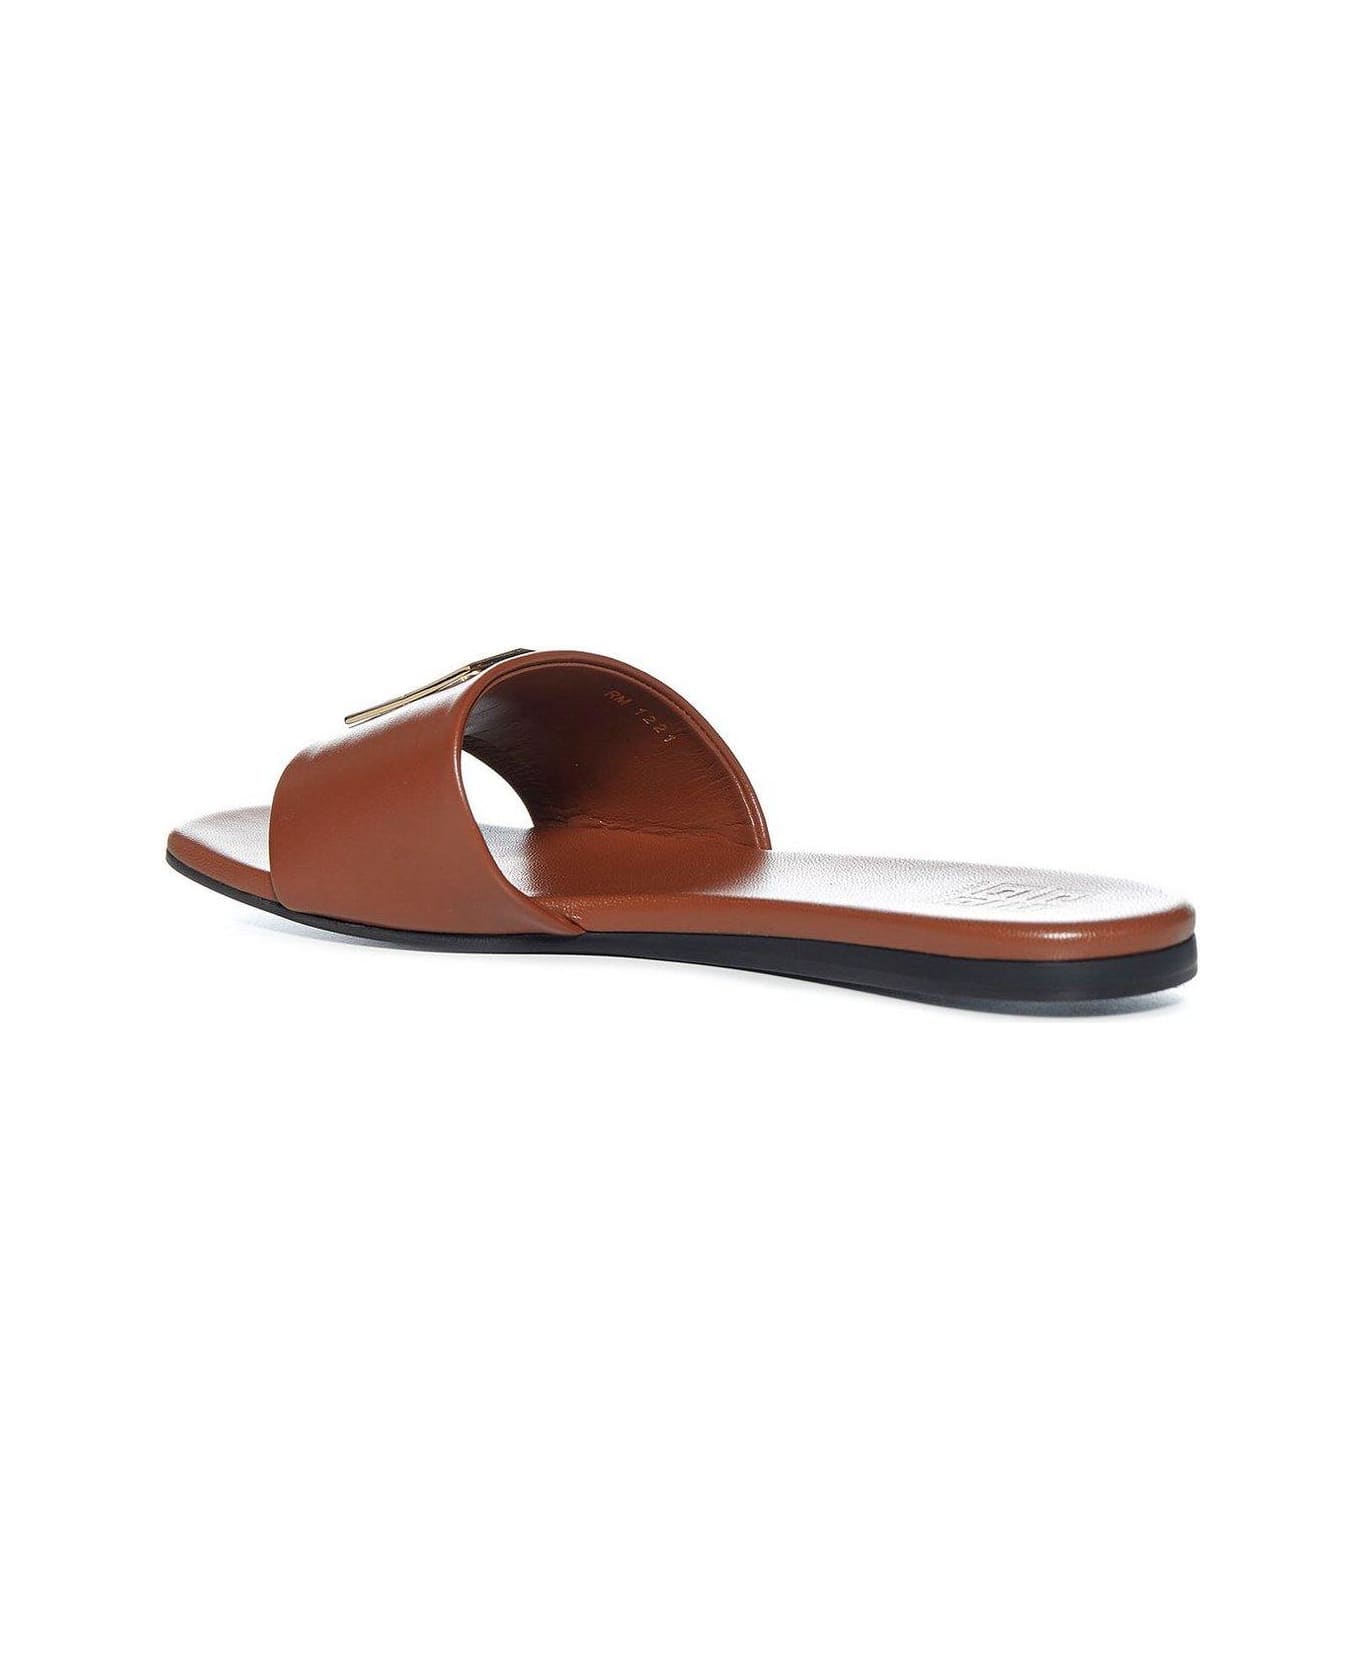 Givenchy 4g Motif Flat Sandals - BROWN サンダル